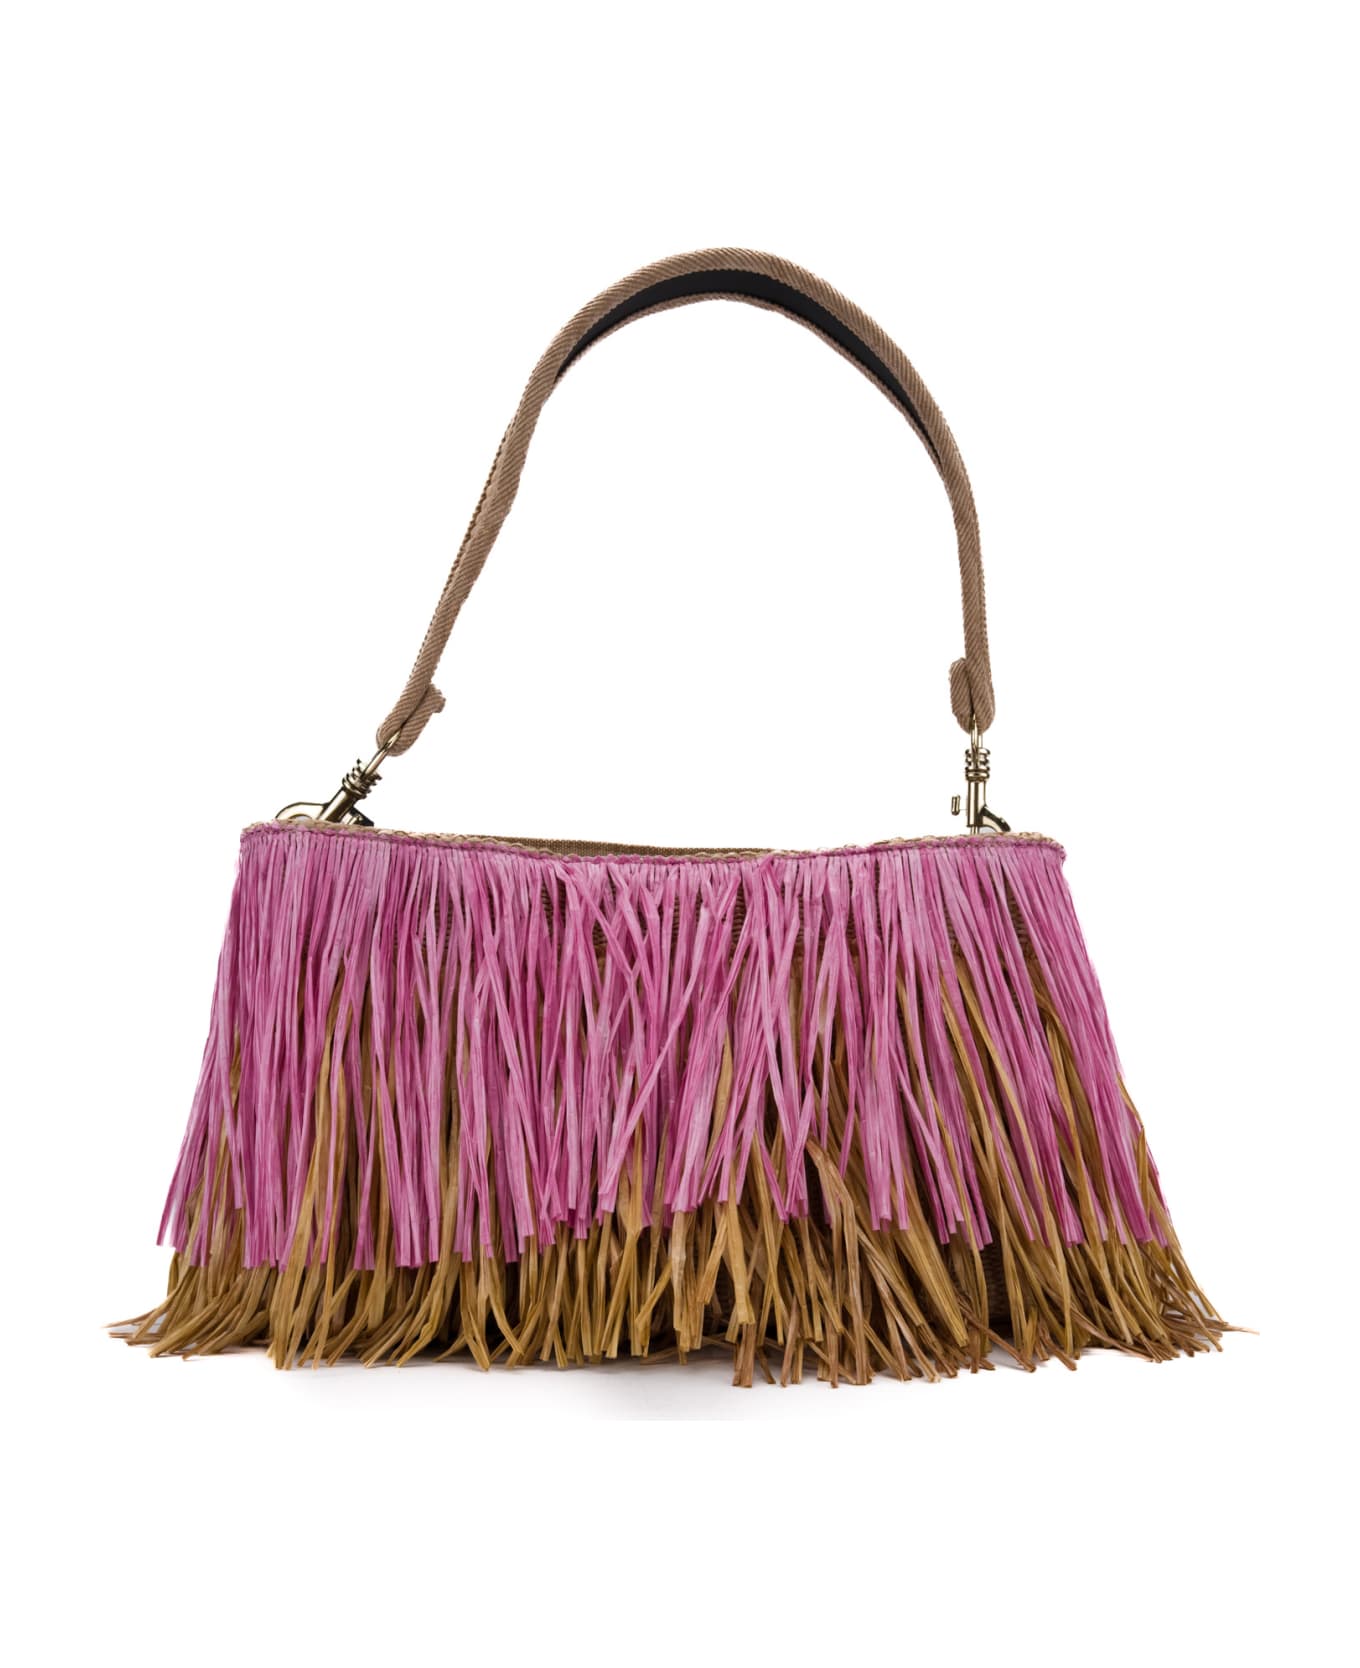 Viamailbag Jasmine Fringe Bag - Pink/natural